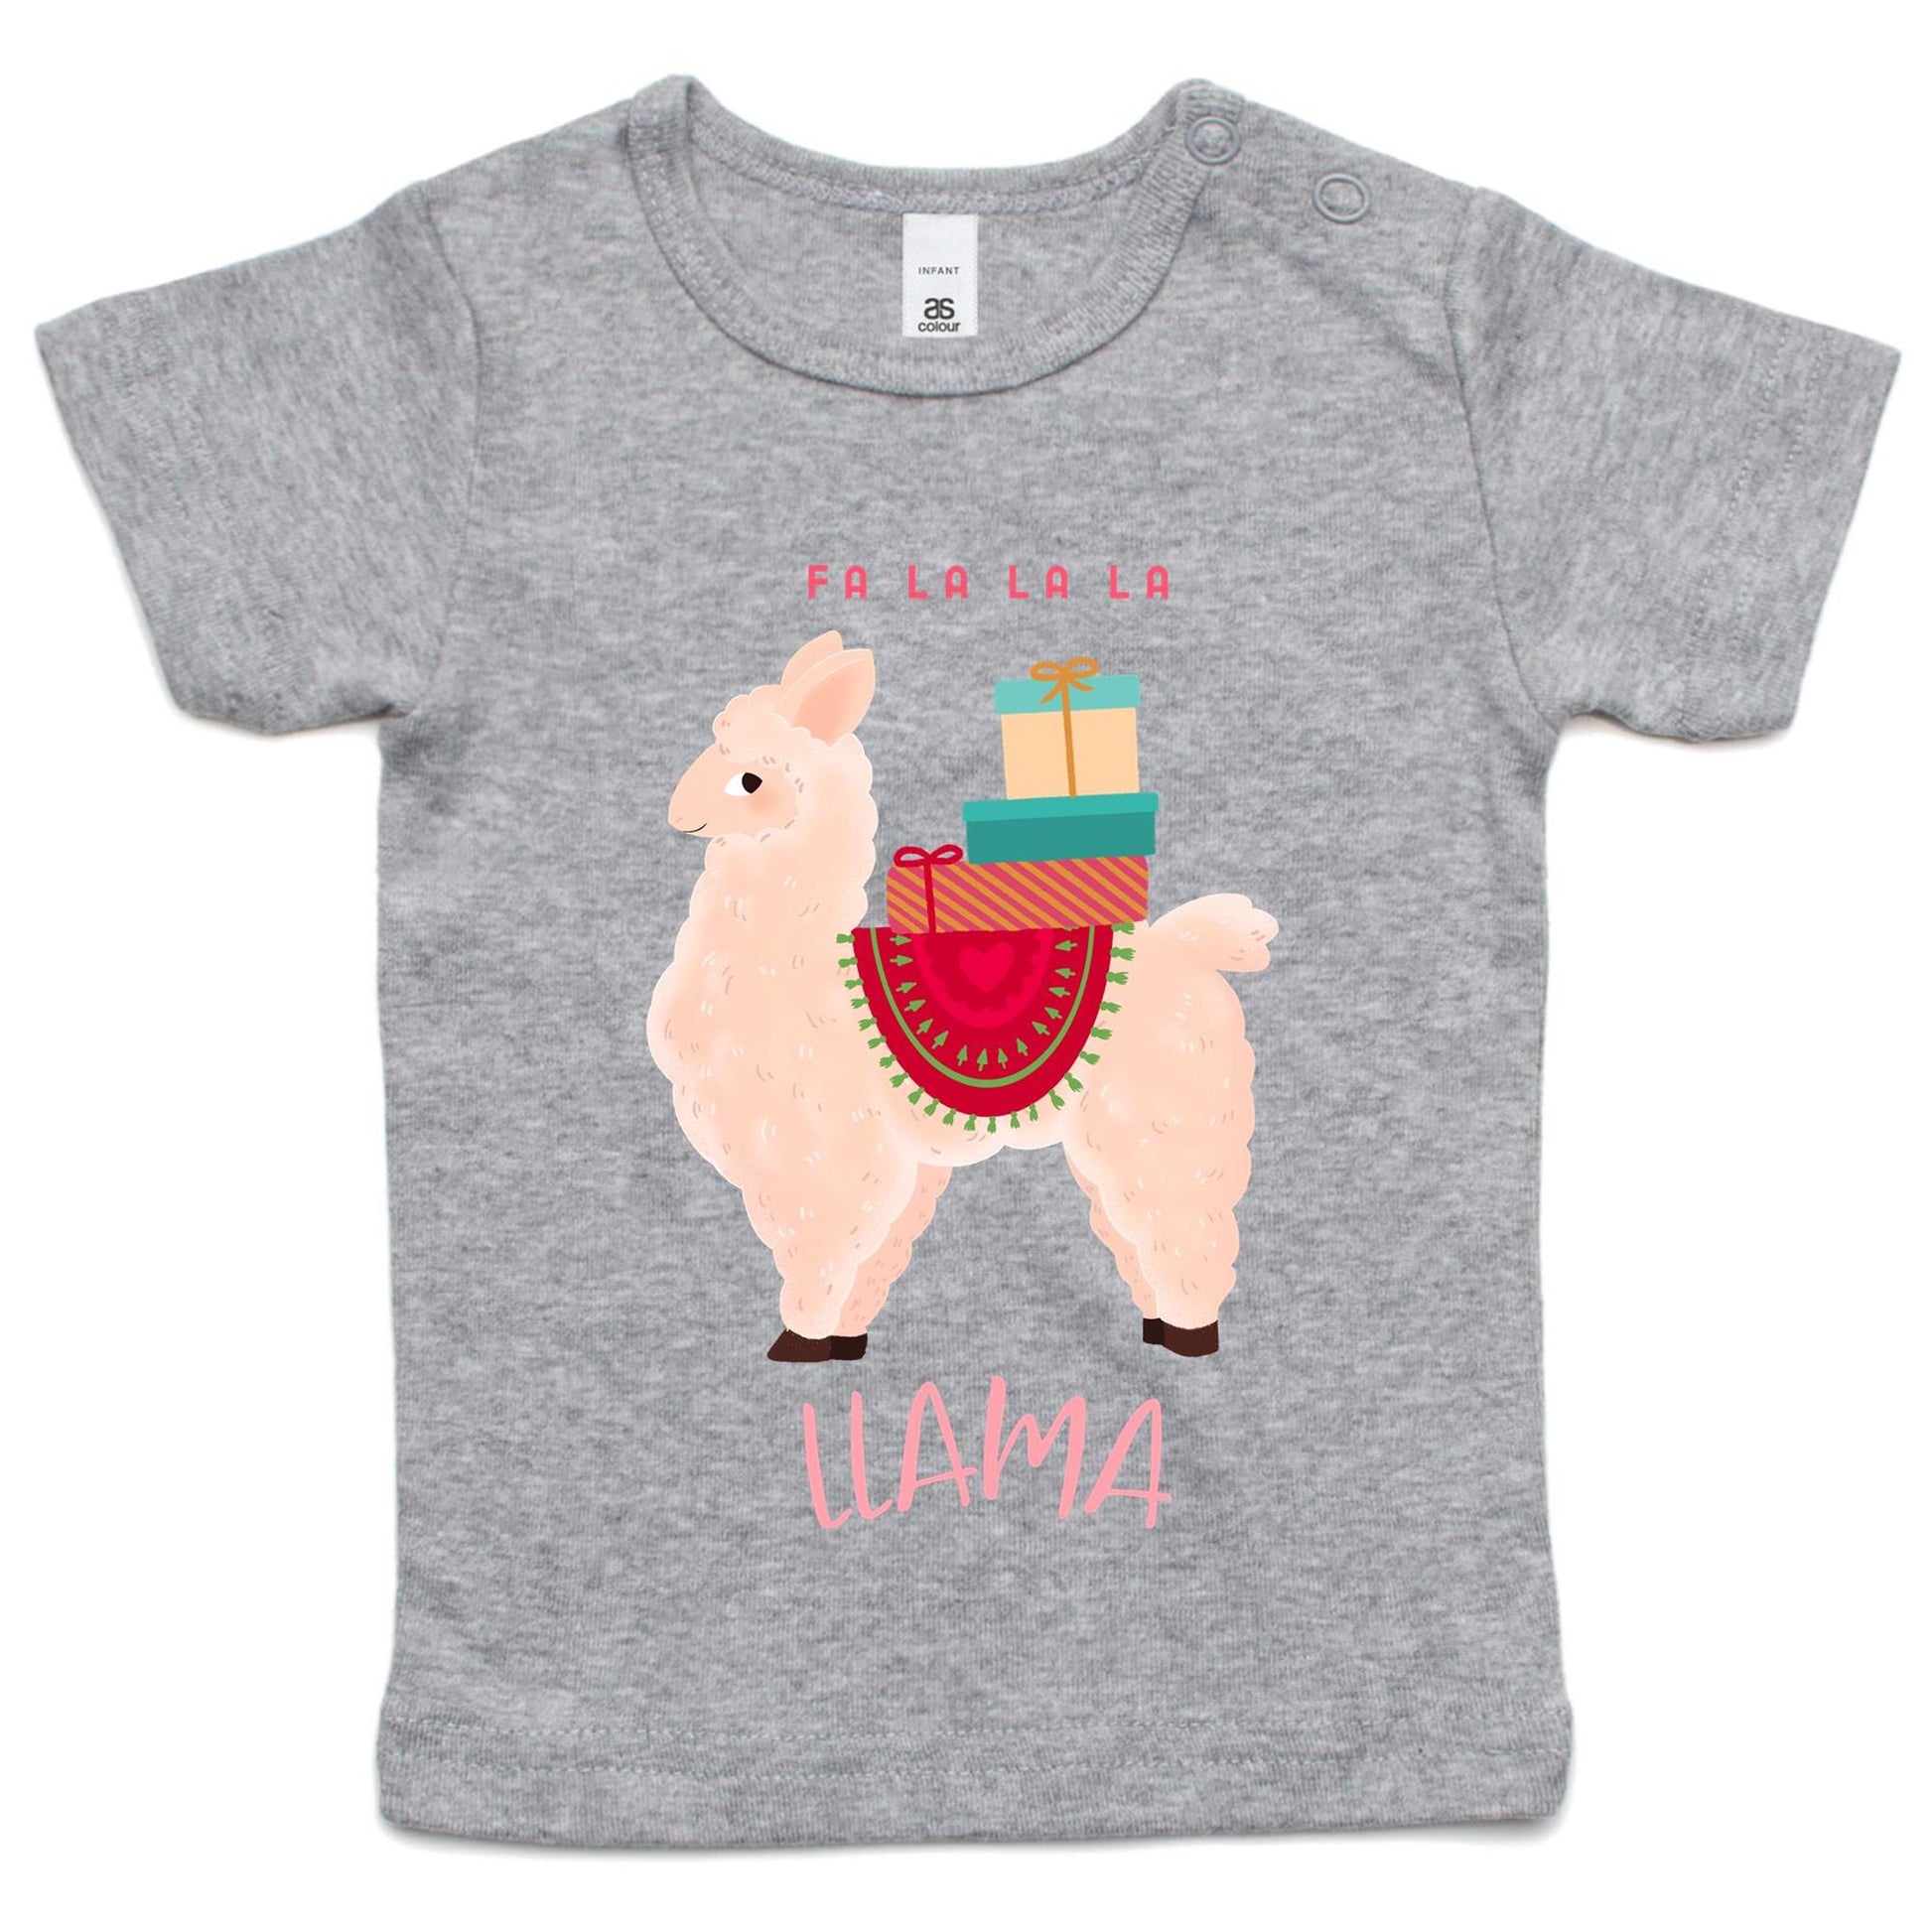 Llama Christmas - Baby T-shirt Grey Marle Christmas Baby T-shirt Merry Christmas